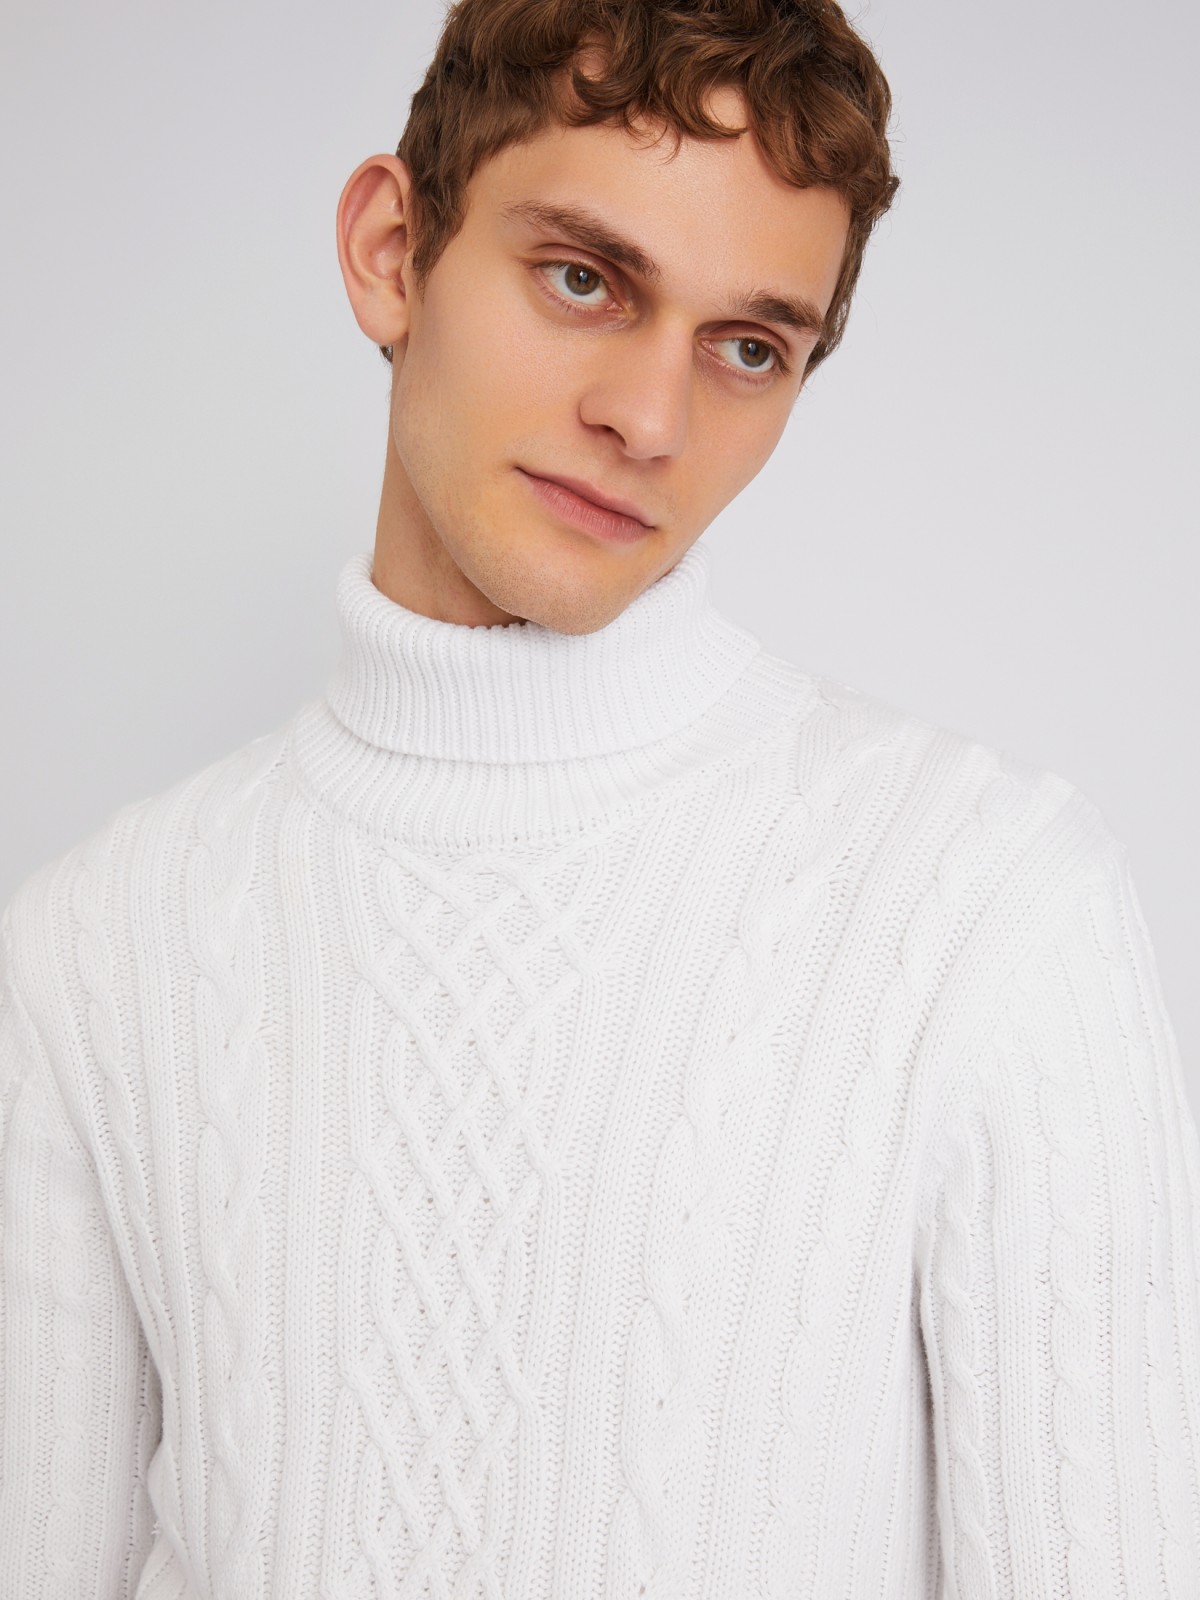 Вязаный свитер с фактурным узором косы